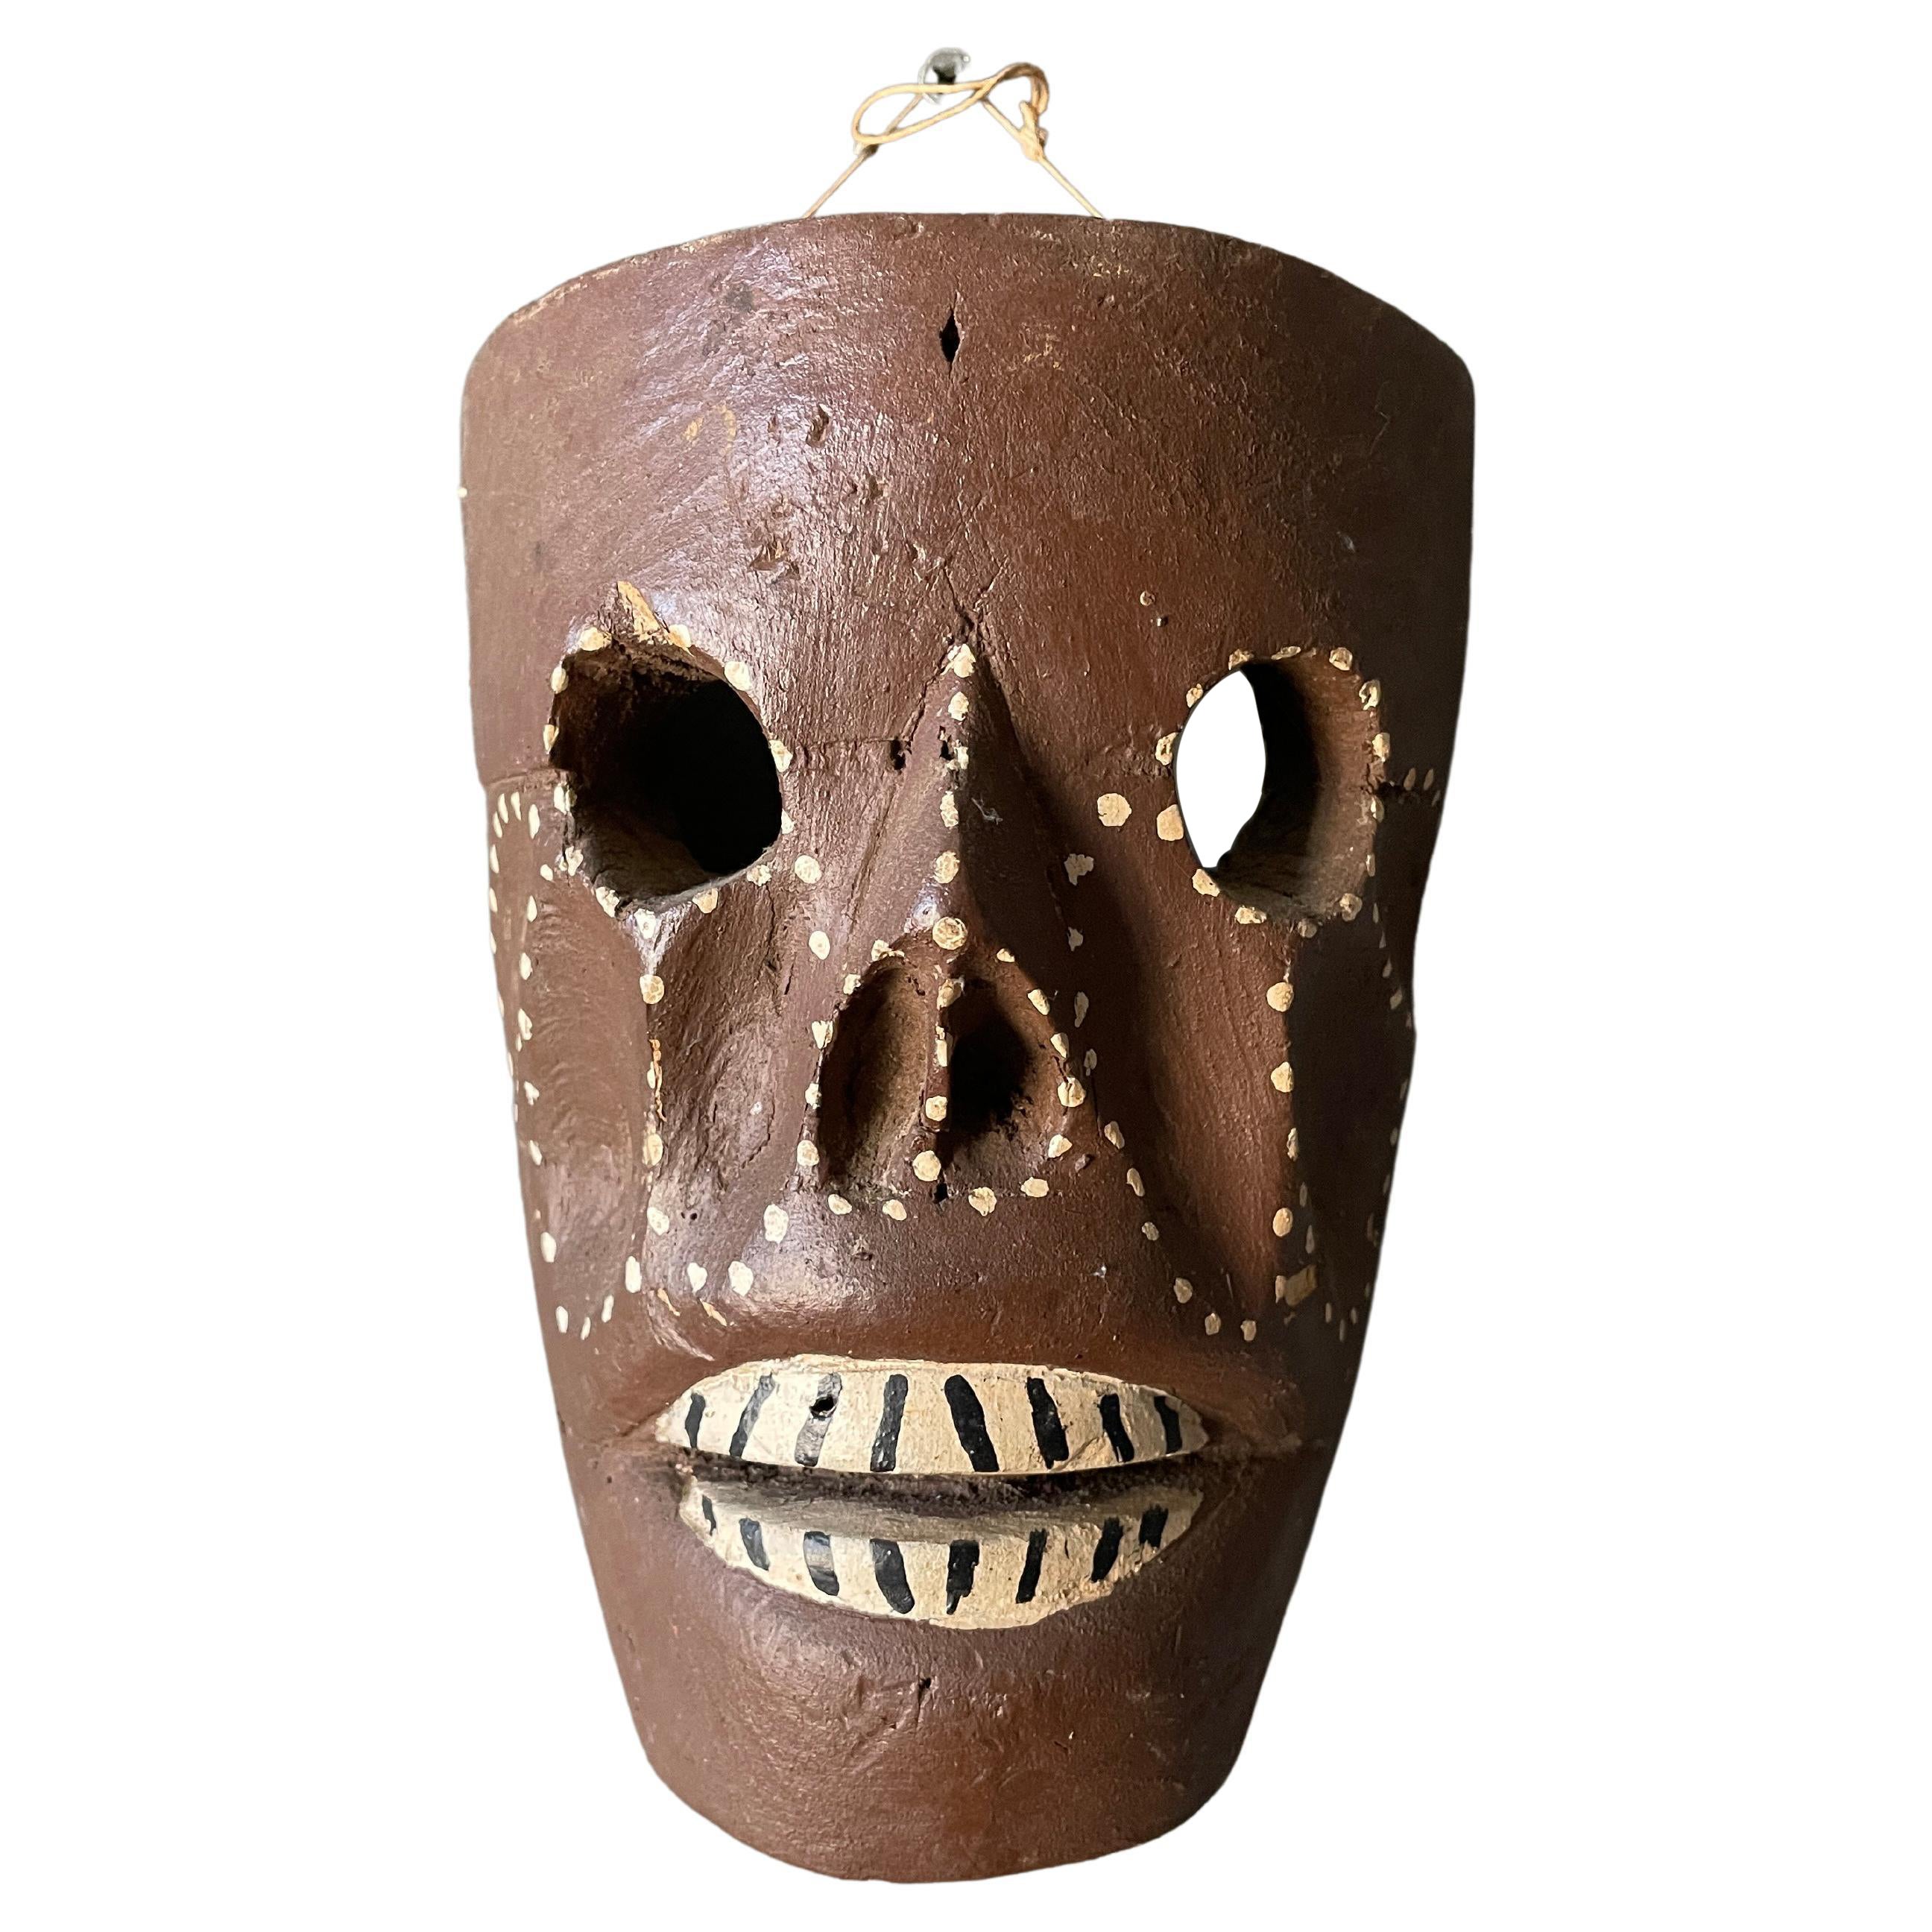 Vintage Tribal Hand Carved Skeleton Mask